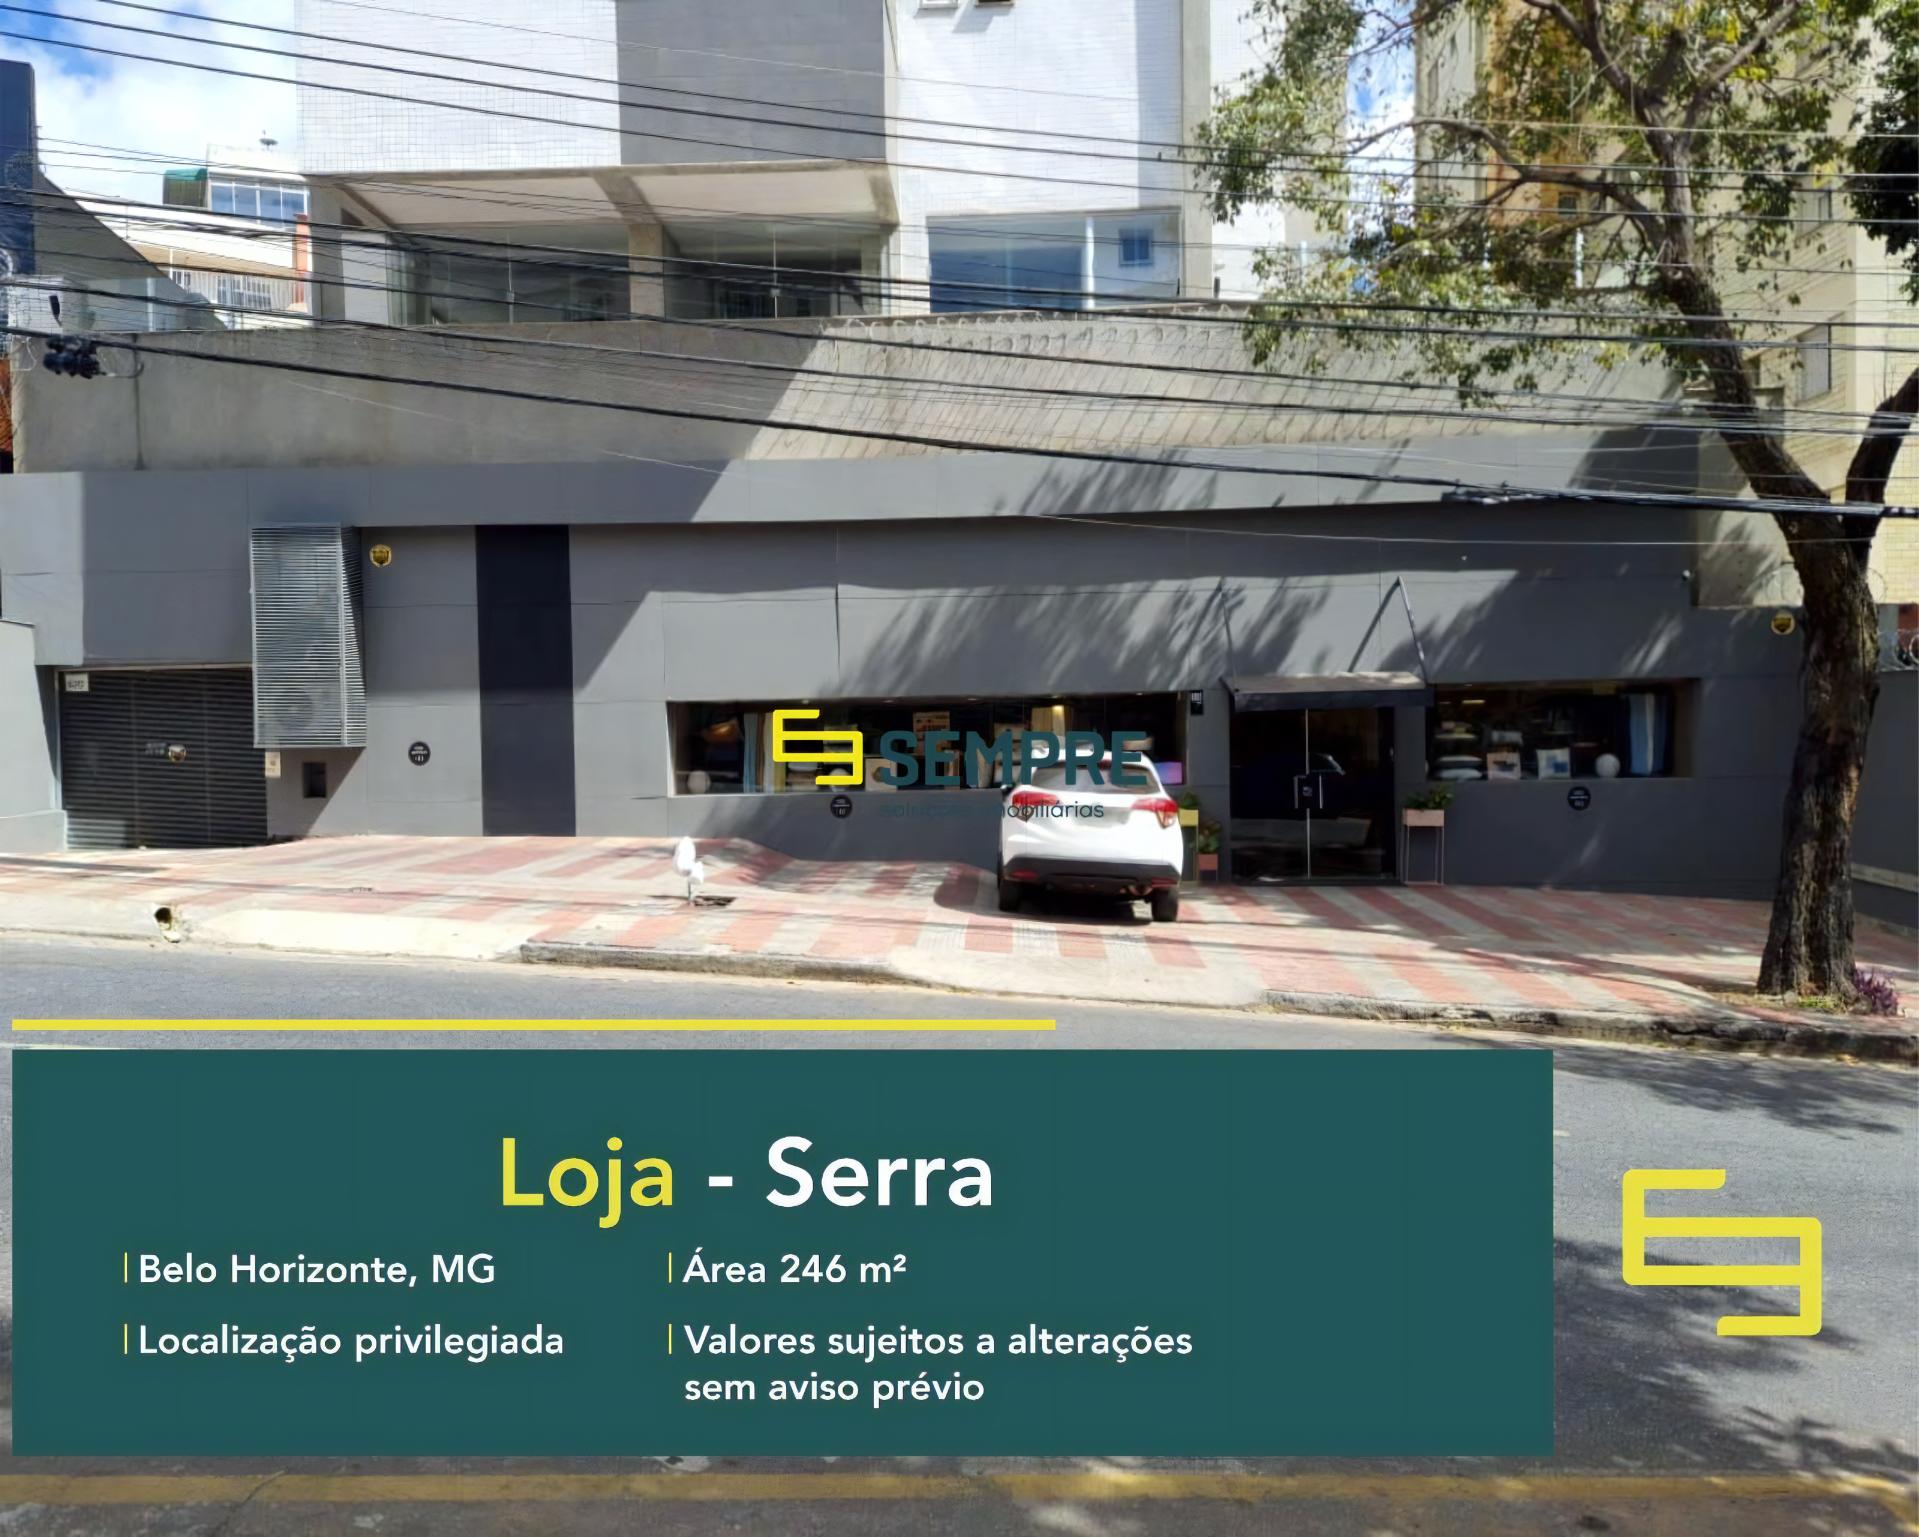 Loja para alugar no bairro Serra em Belo Horizonte, excelente ponto comercial. O estabelecimento comercial conta com área de 246 m².